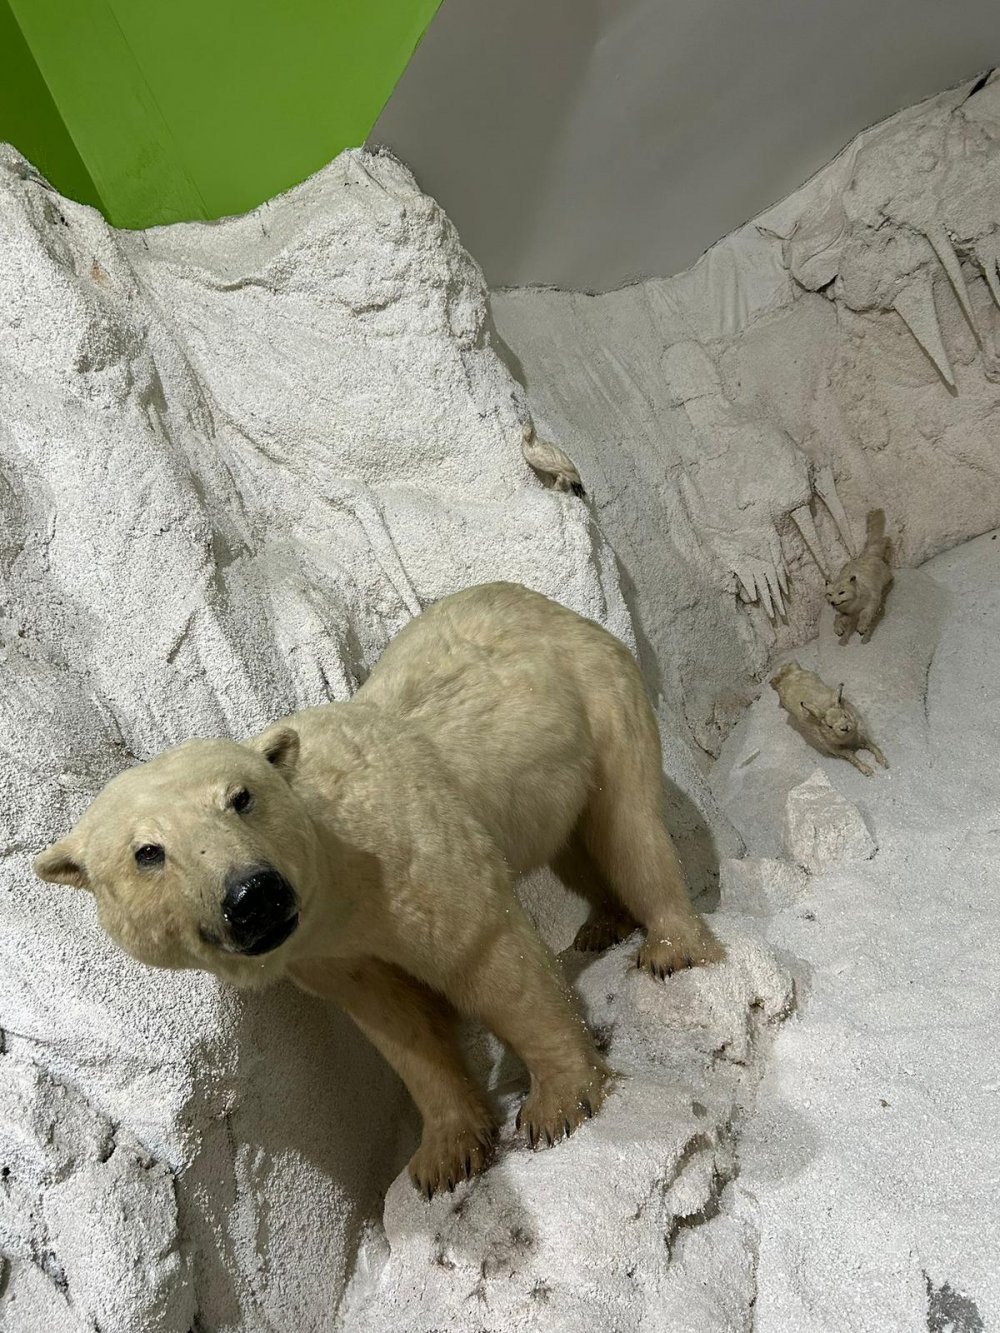 Türkiye'deki Son Anadolu Kaplanını Öldürmüş! Kutup Ayısı İçin Kanada'ya Gitti, Çizgili Geyik İçin 2 Hafta Ağaçta Kaldı!